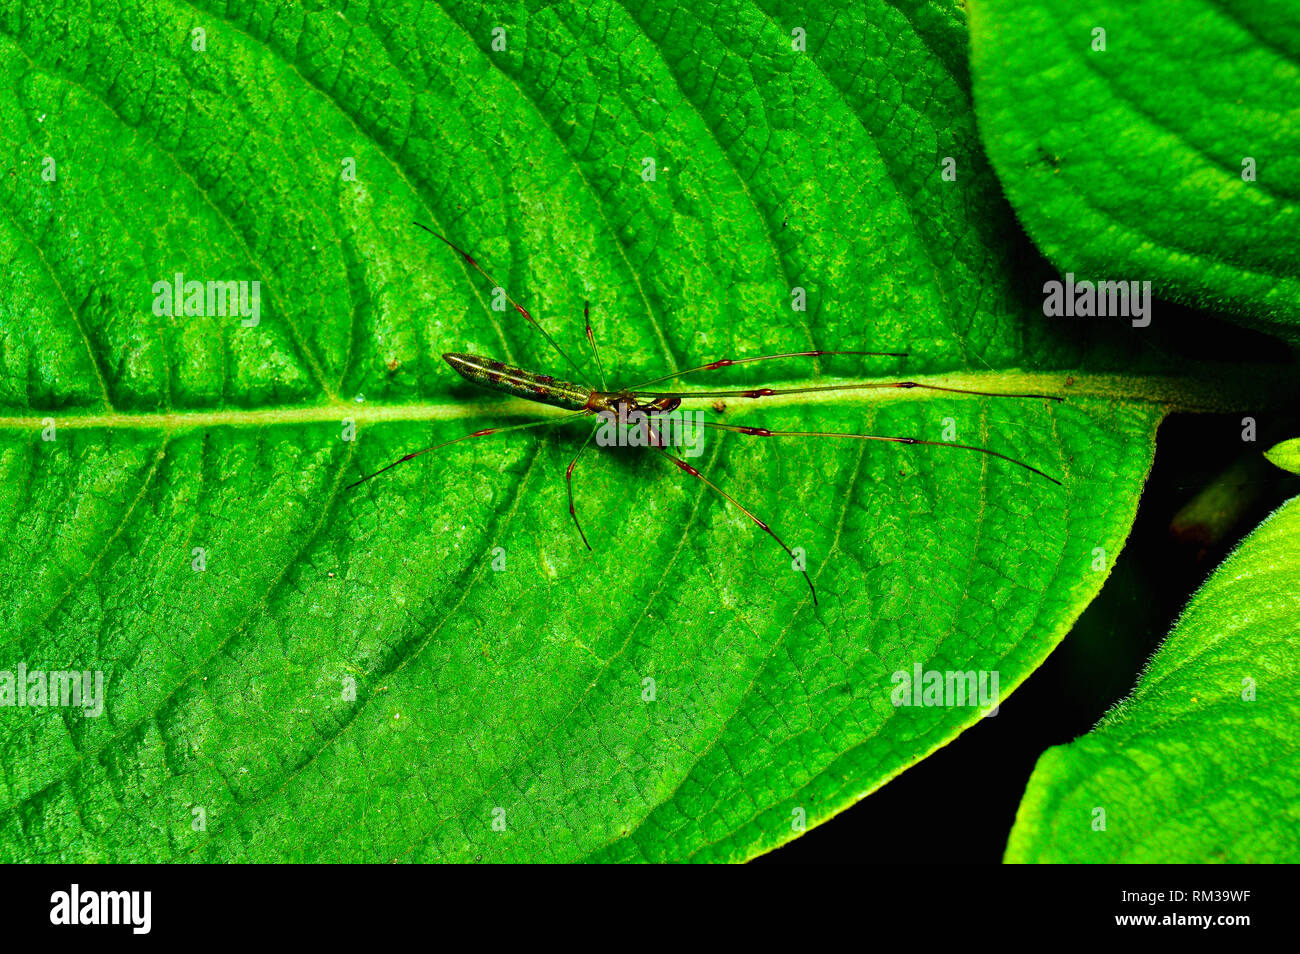 Long Jawed spider - Tetragnatha guatemalensis, Satara, Maharashtra, India Stock Photo